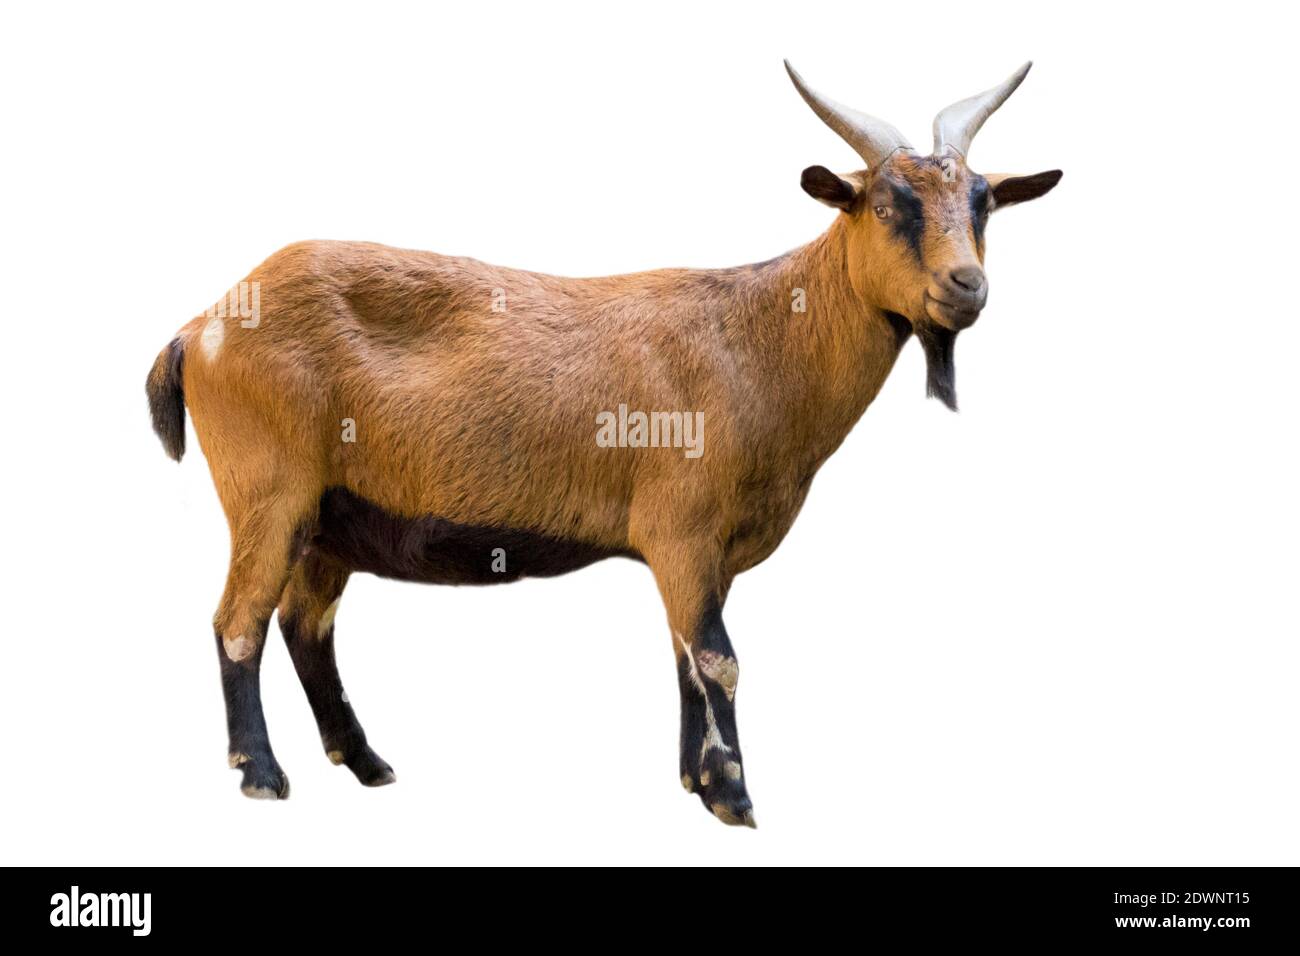 Imagen de una cabra marrón sobre fondo blanco. Animales de granja. Foto de stock